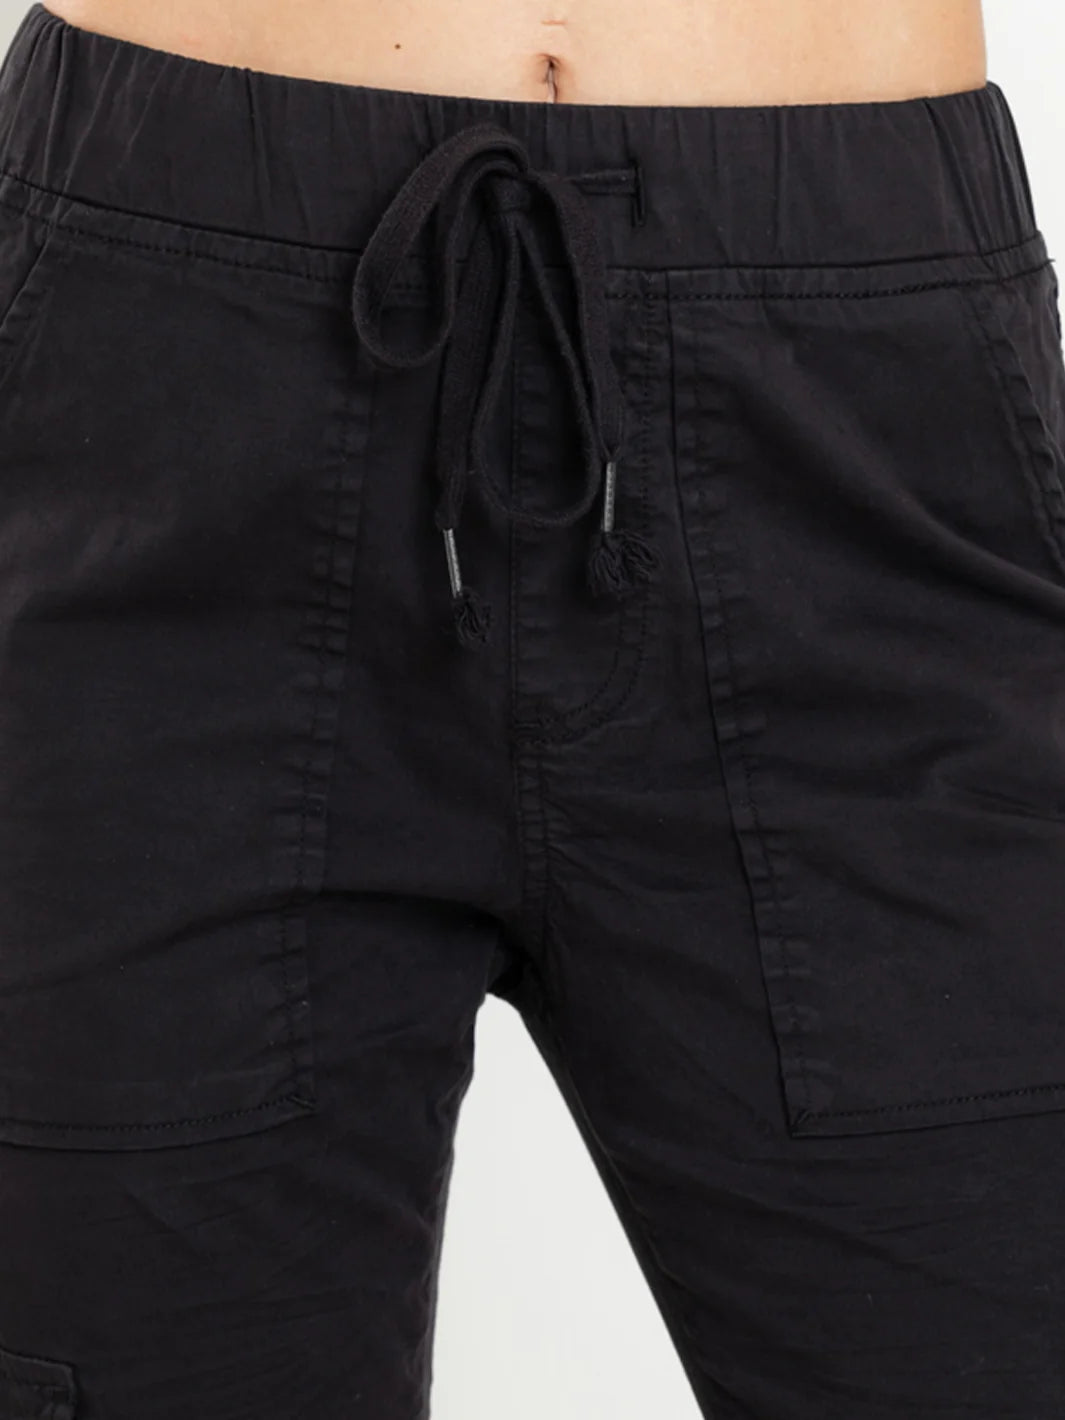 Andi Black Cargo - Bianco Jeans - Beechworth Emporium